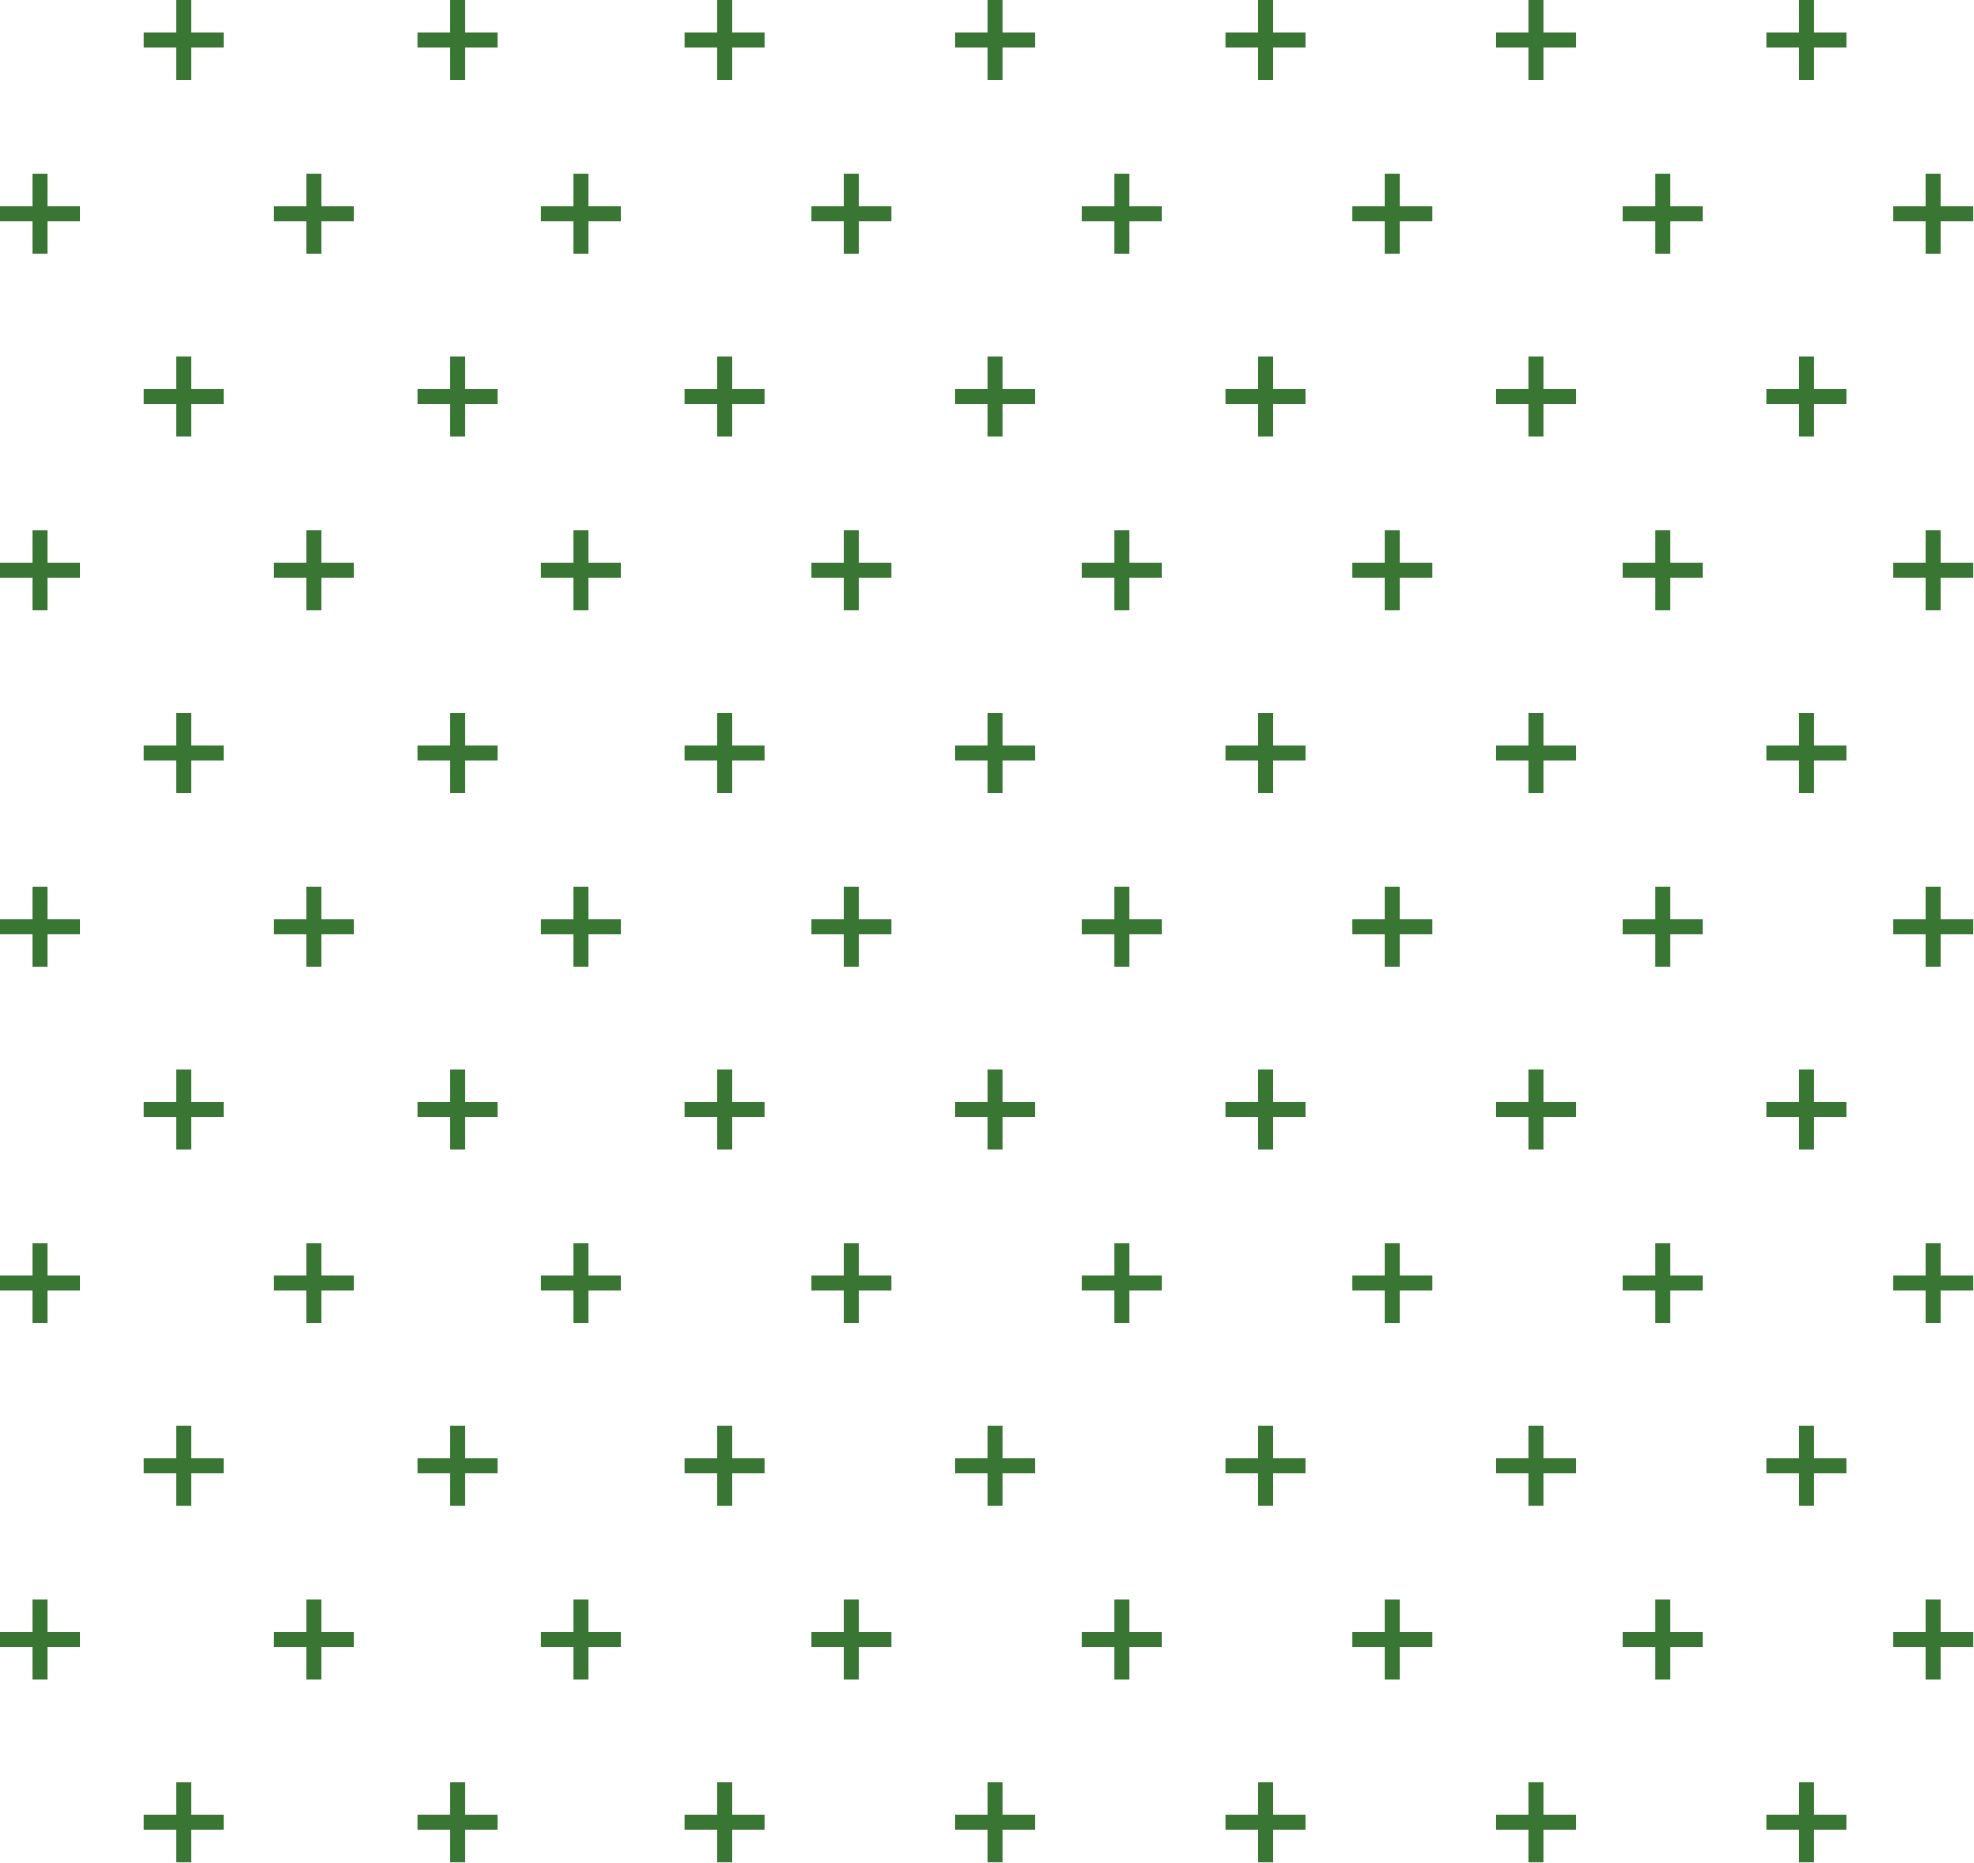 cross pattern